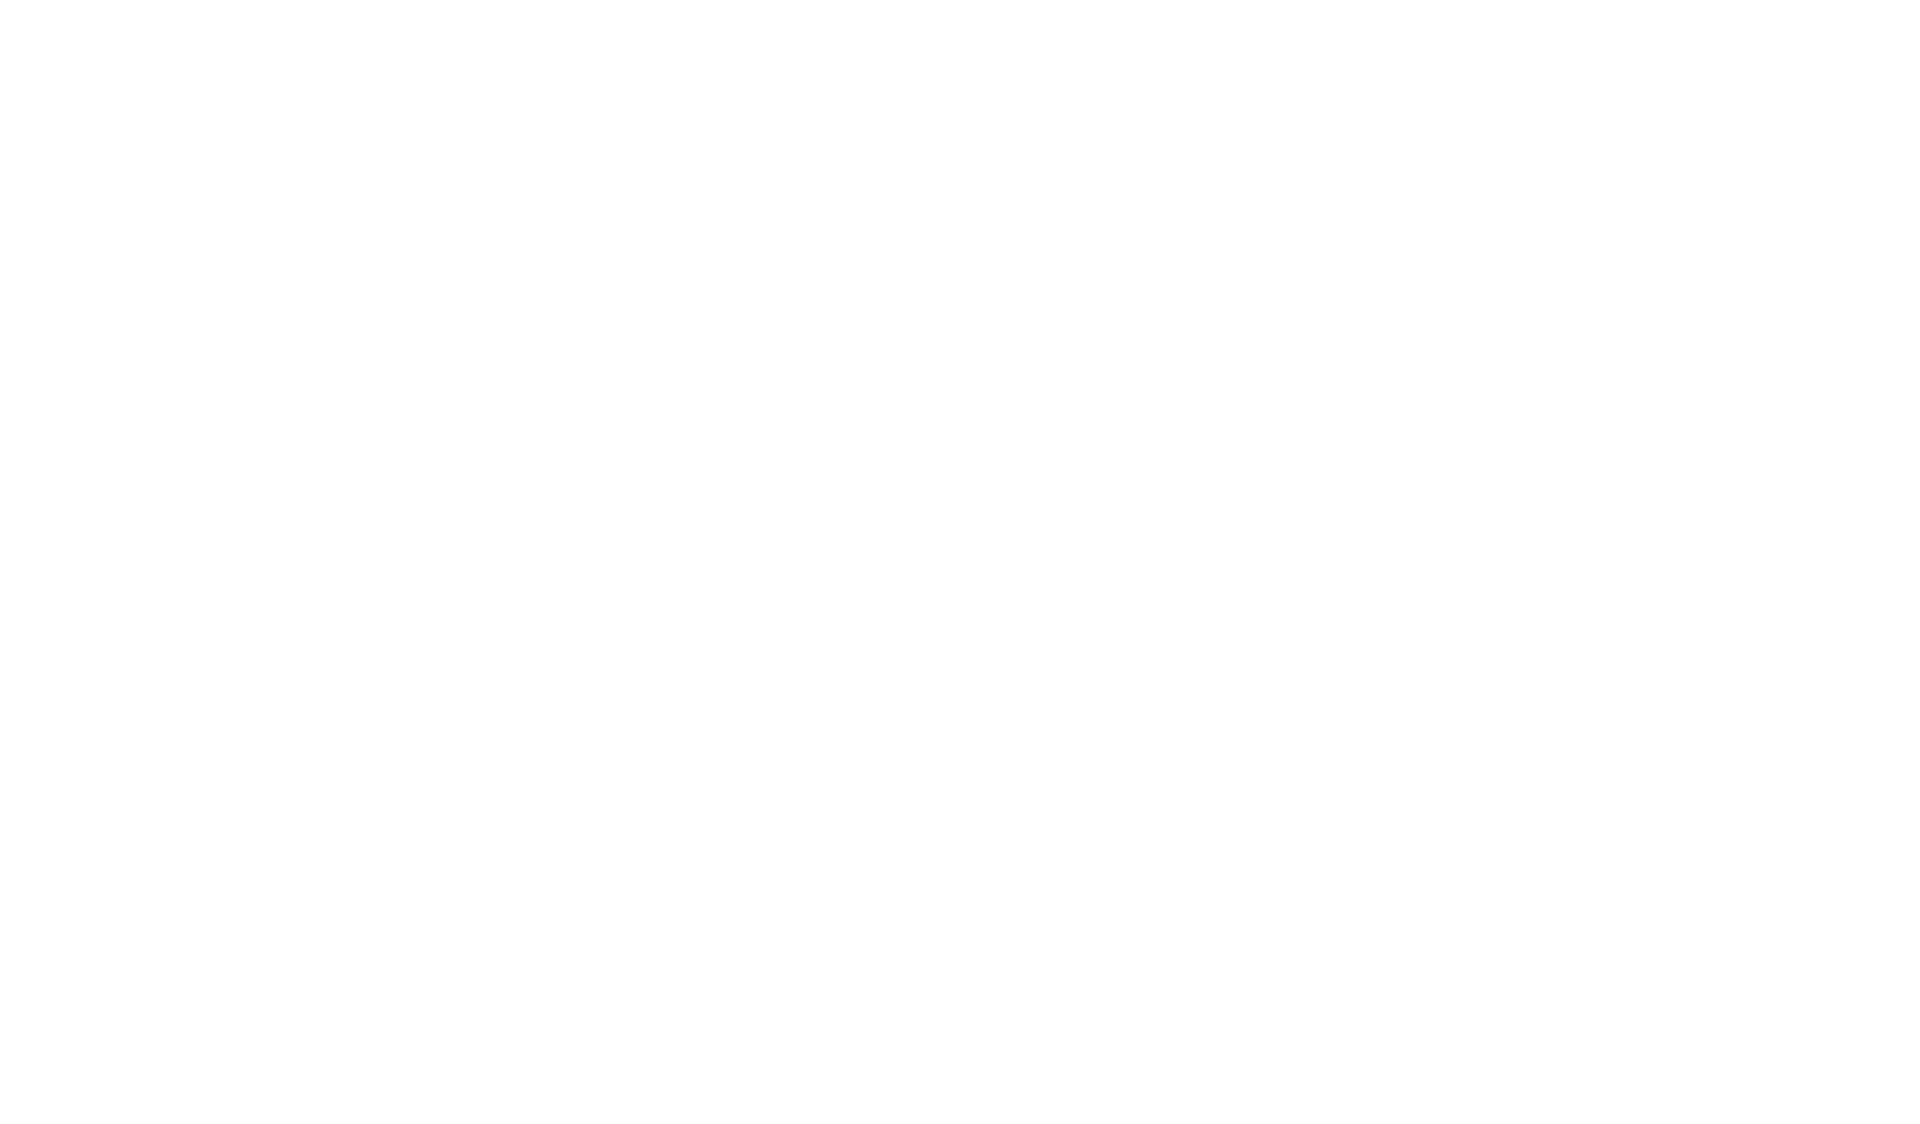 Carustone Memorials